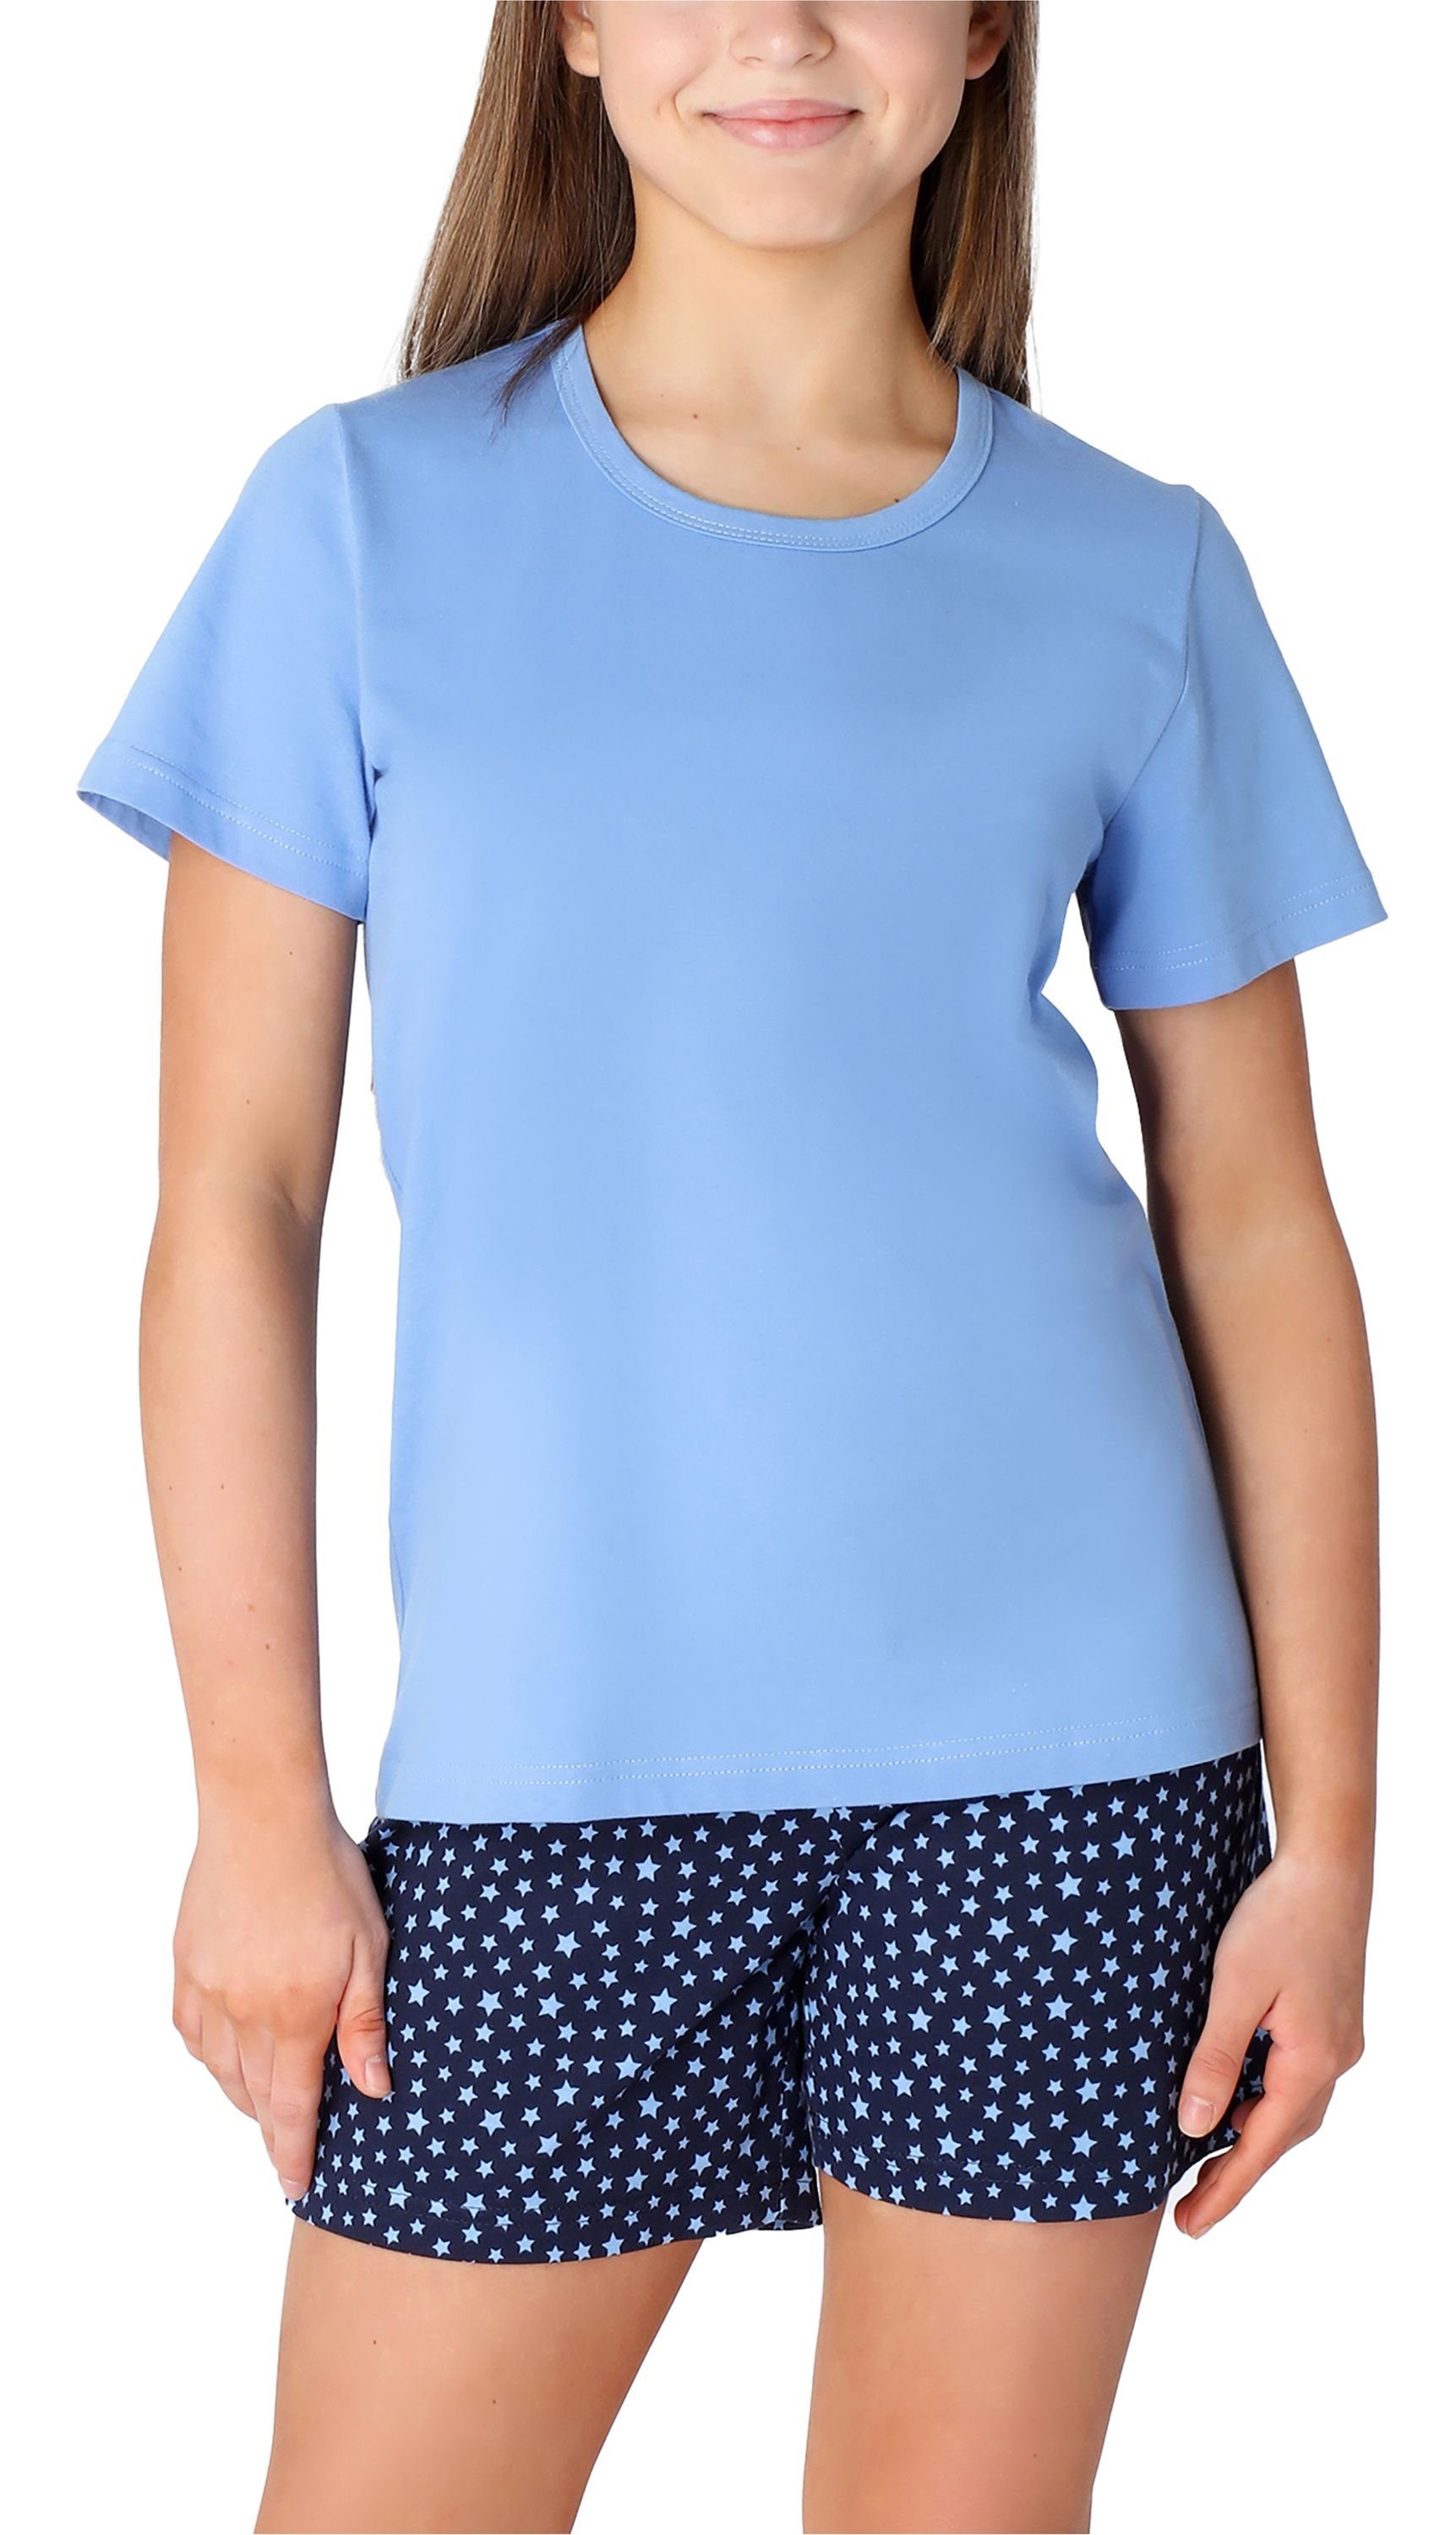 MS10-265 Pyjama Schlafanzug Set Mädchen Kurz Style Schlafanzüge Baumwolle aus Blau/Marine/Sterne Merry